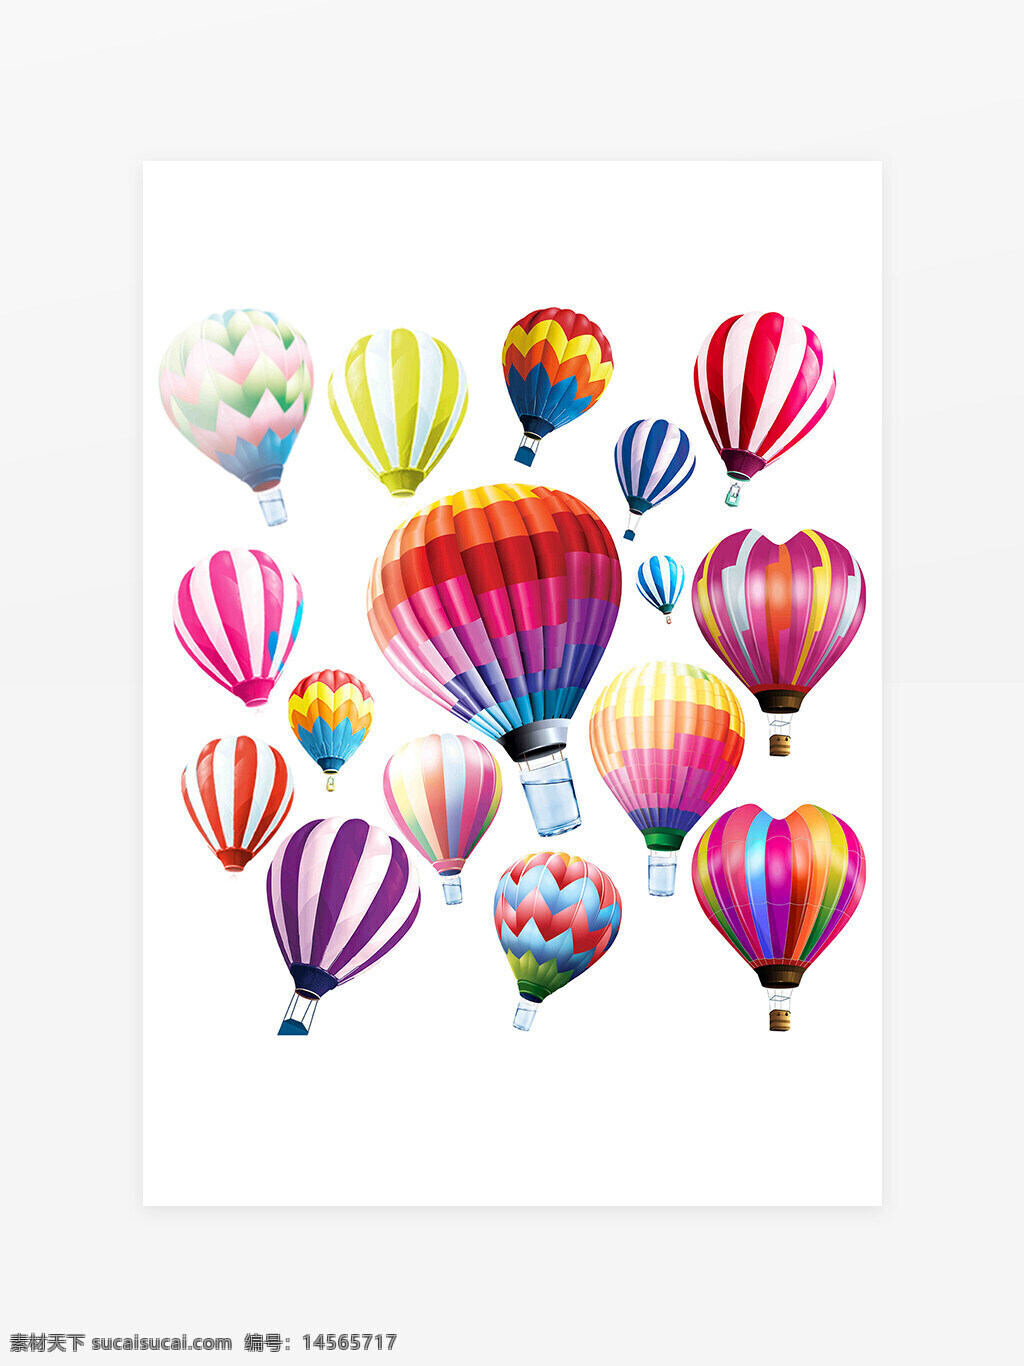 彩色气球图片 气球 气球素材 热气球 氢气球 五颜六色气球 彩球